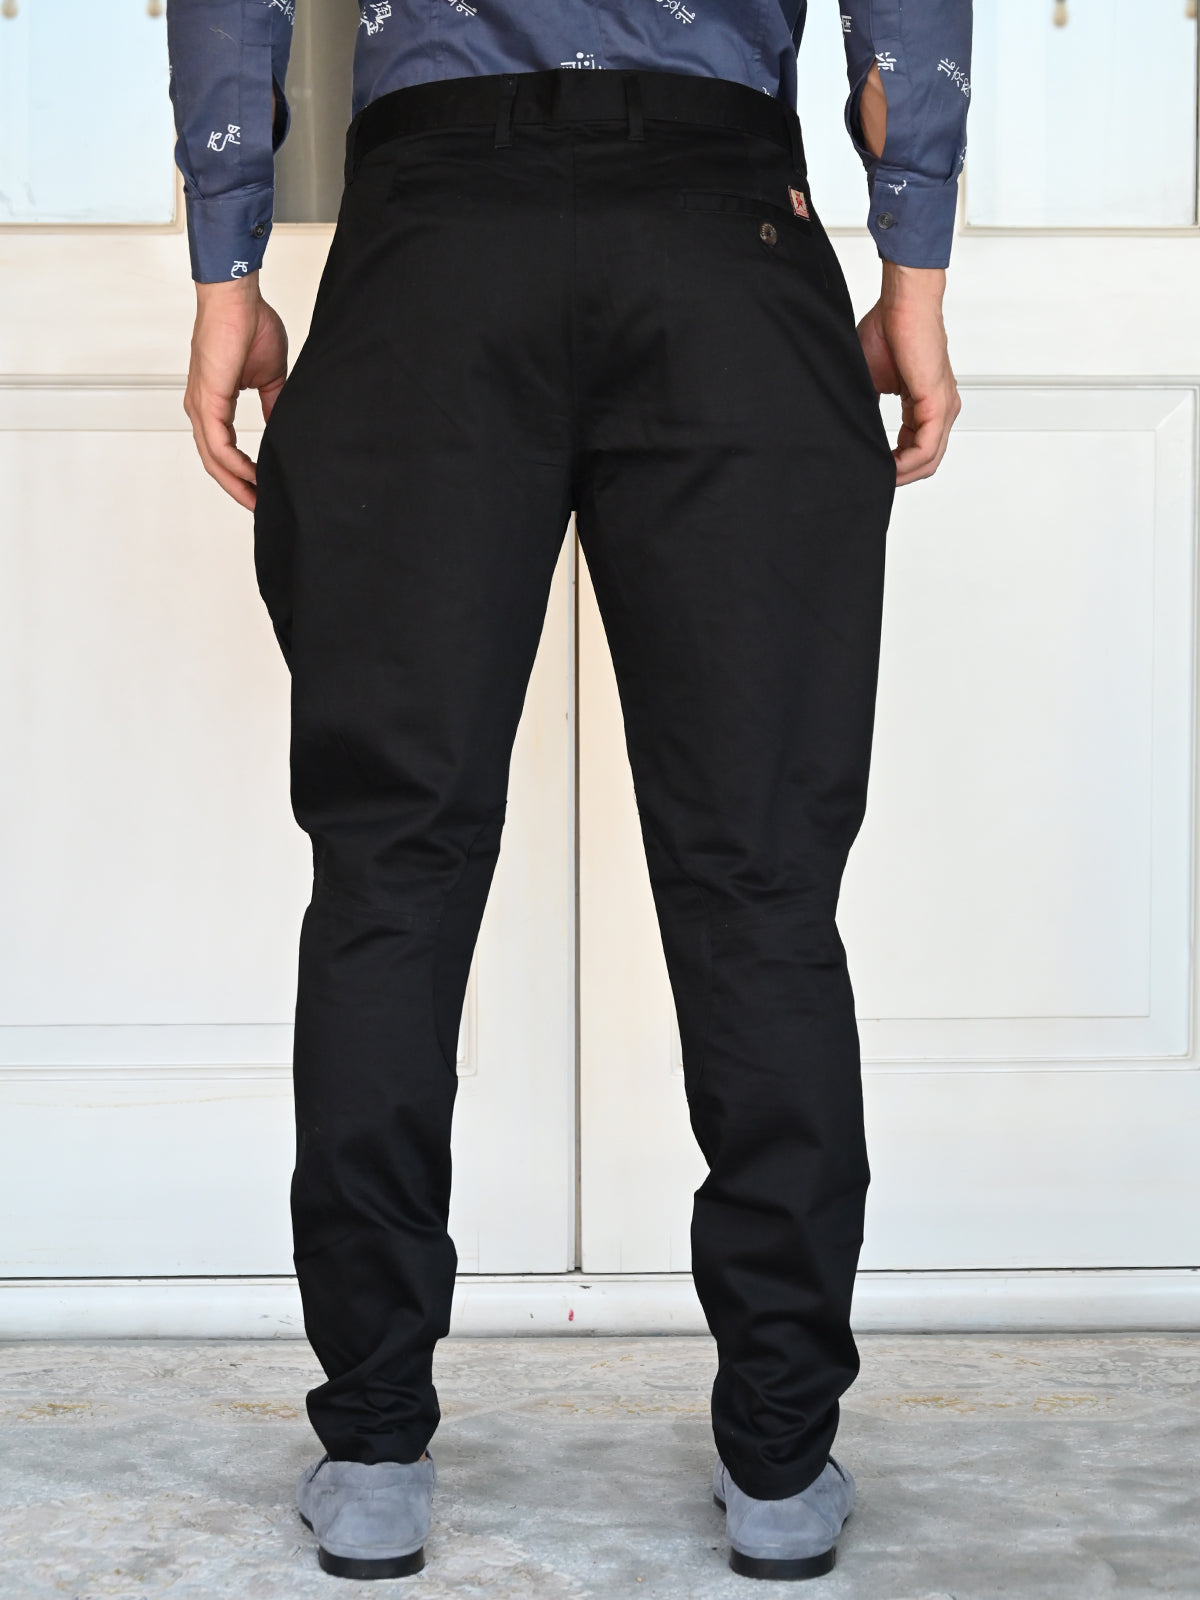 Odette Black Jodhpuri Style Cotton Trouser for Men